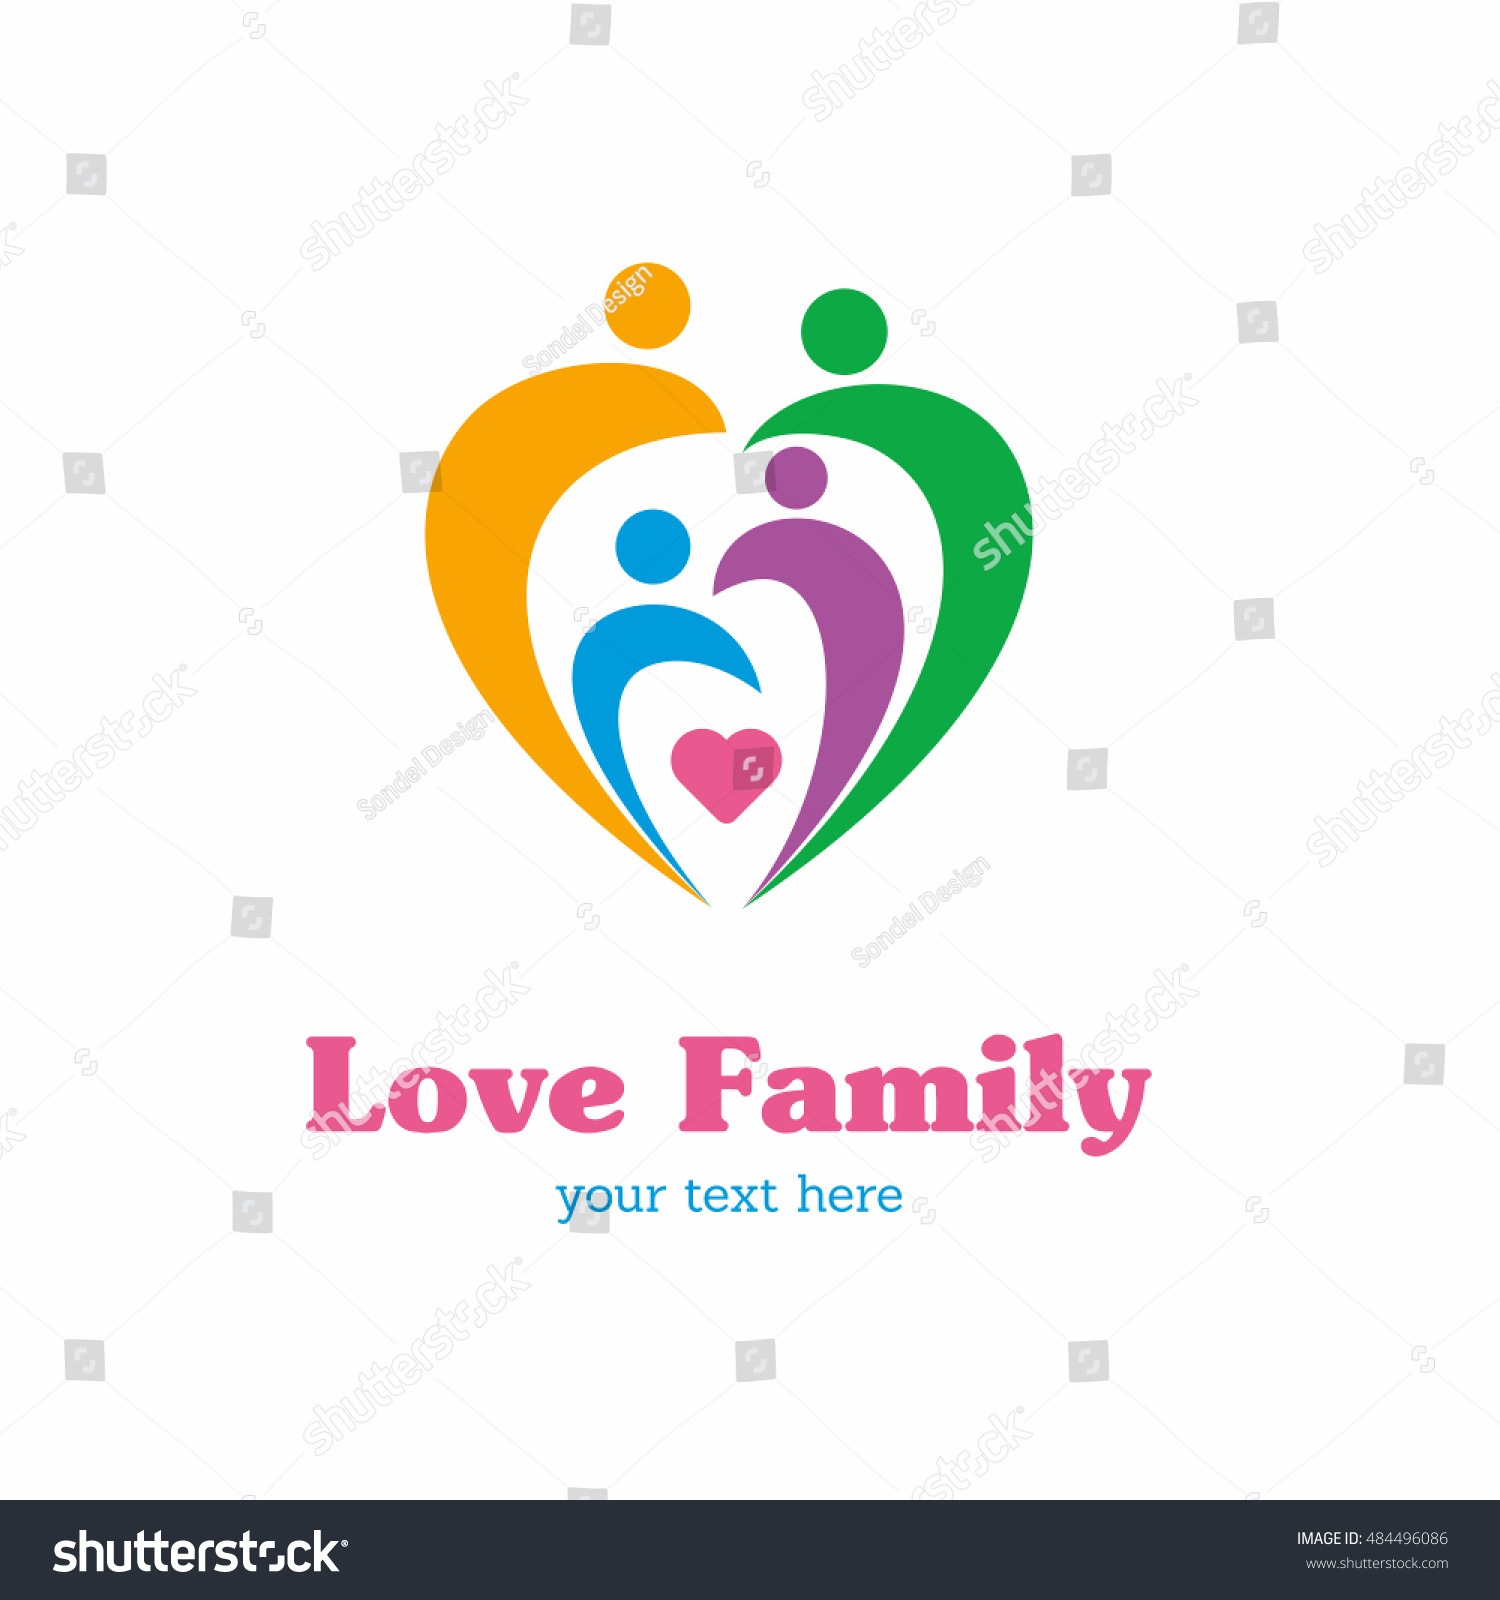 Family Love Logo Stock Vector 484496086 : Shutterstock